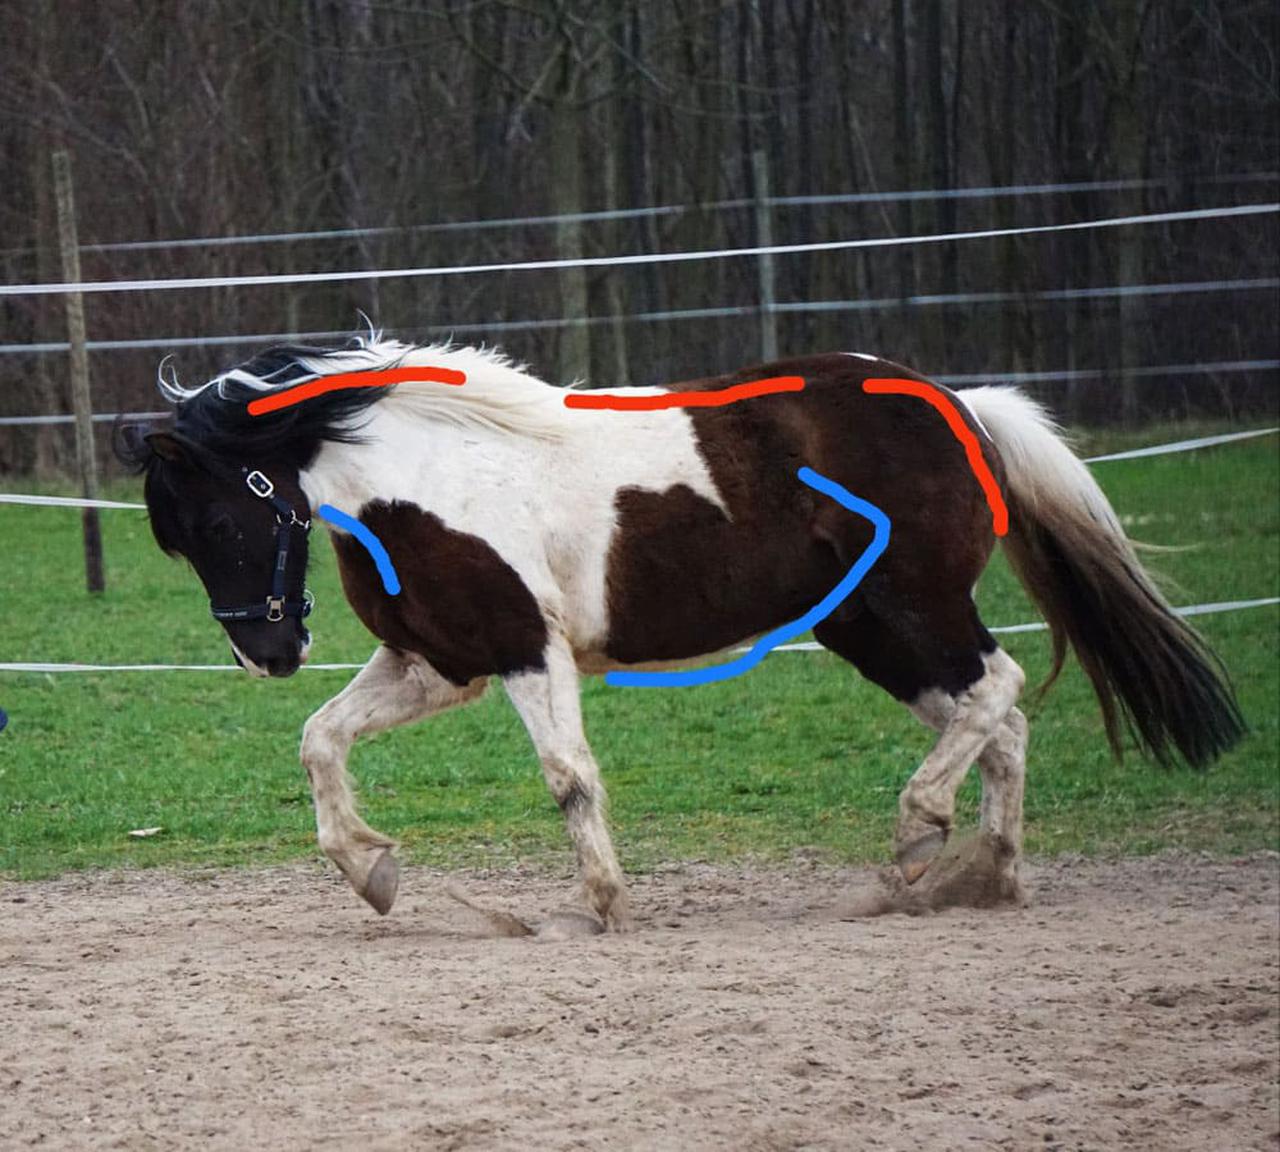 Bild von Pferd in Bewegung mit eingezeichneten dorsalen und ventralen Muskelketten